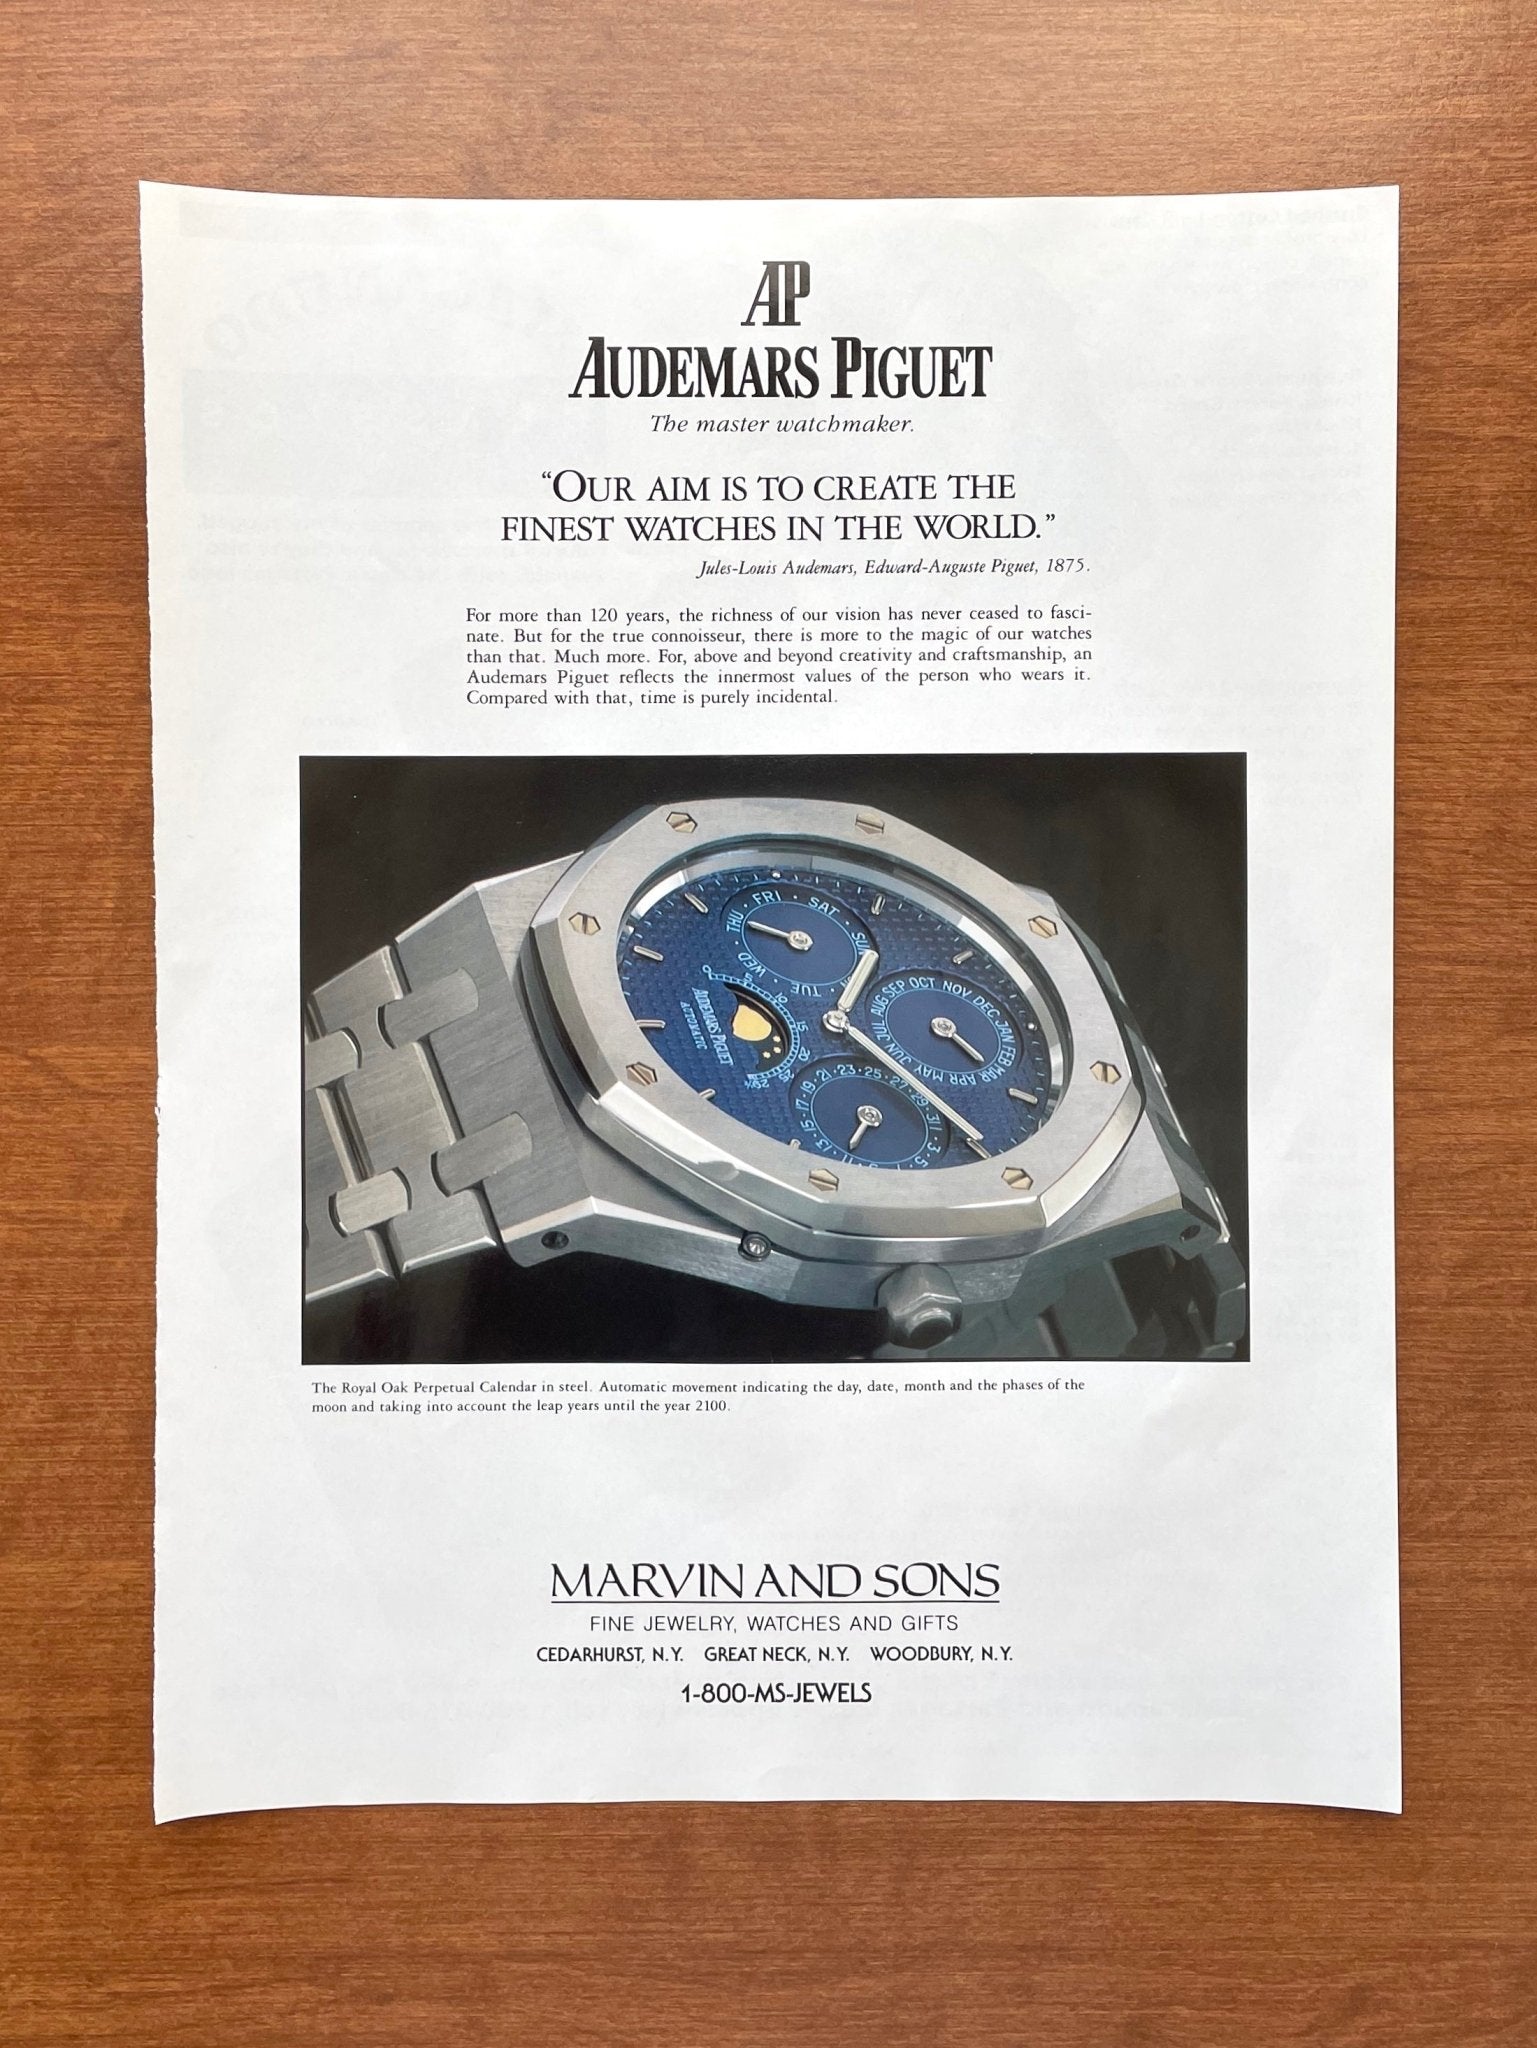 1996 Audemars Piguet Royal Oak Perpetual Calendar Advertisement